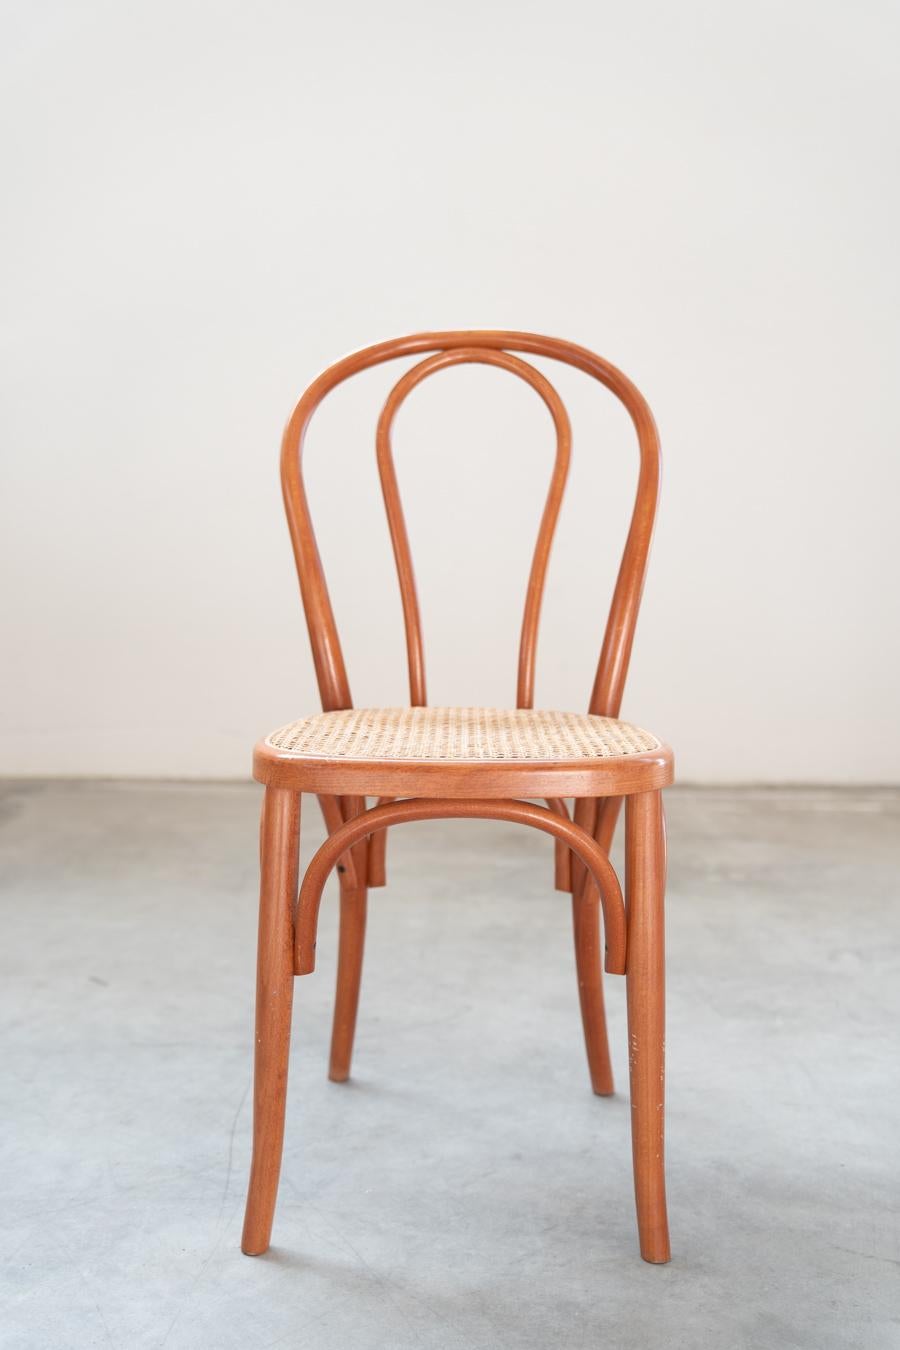 Sedie stile Thonet, in legno di faggio curvato e seduta in paglia, nr 34 totale For Sale 3